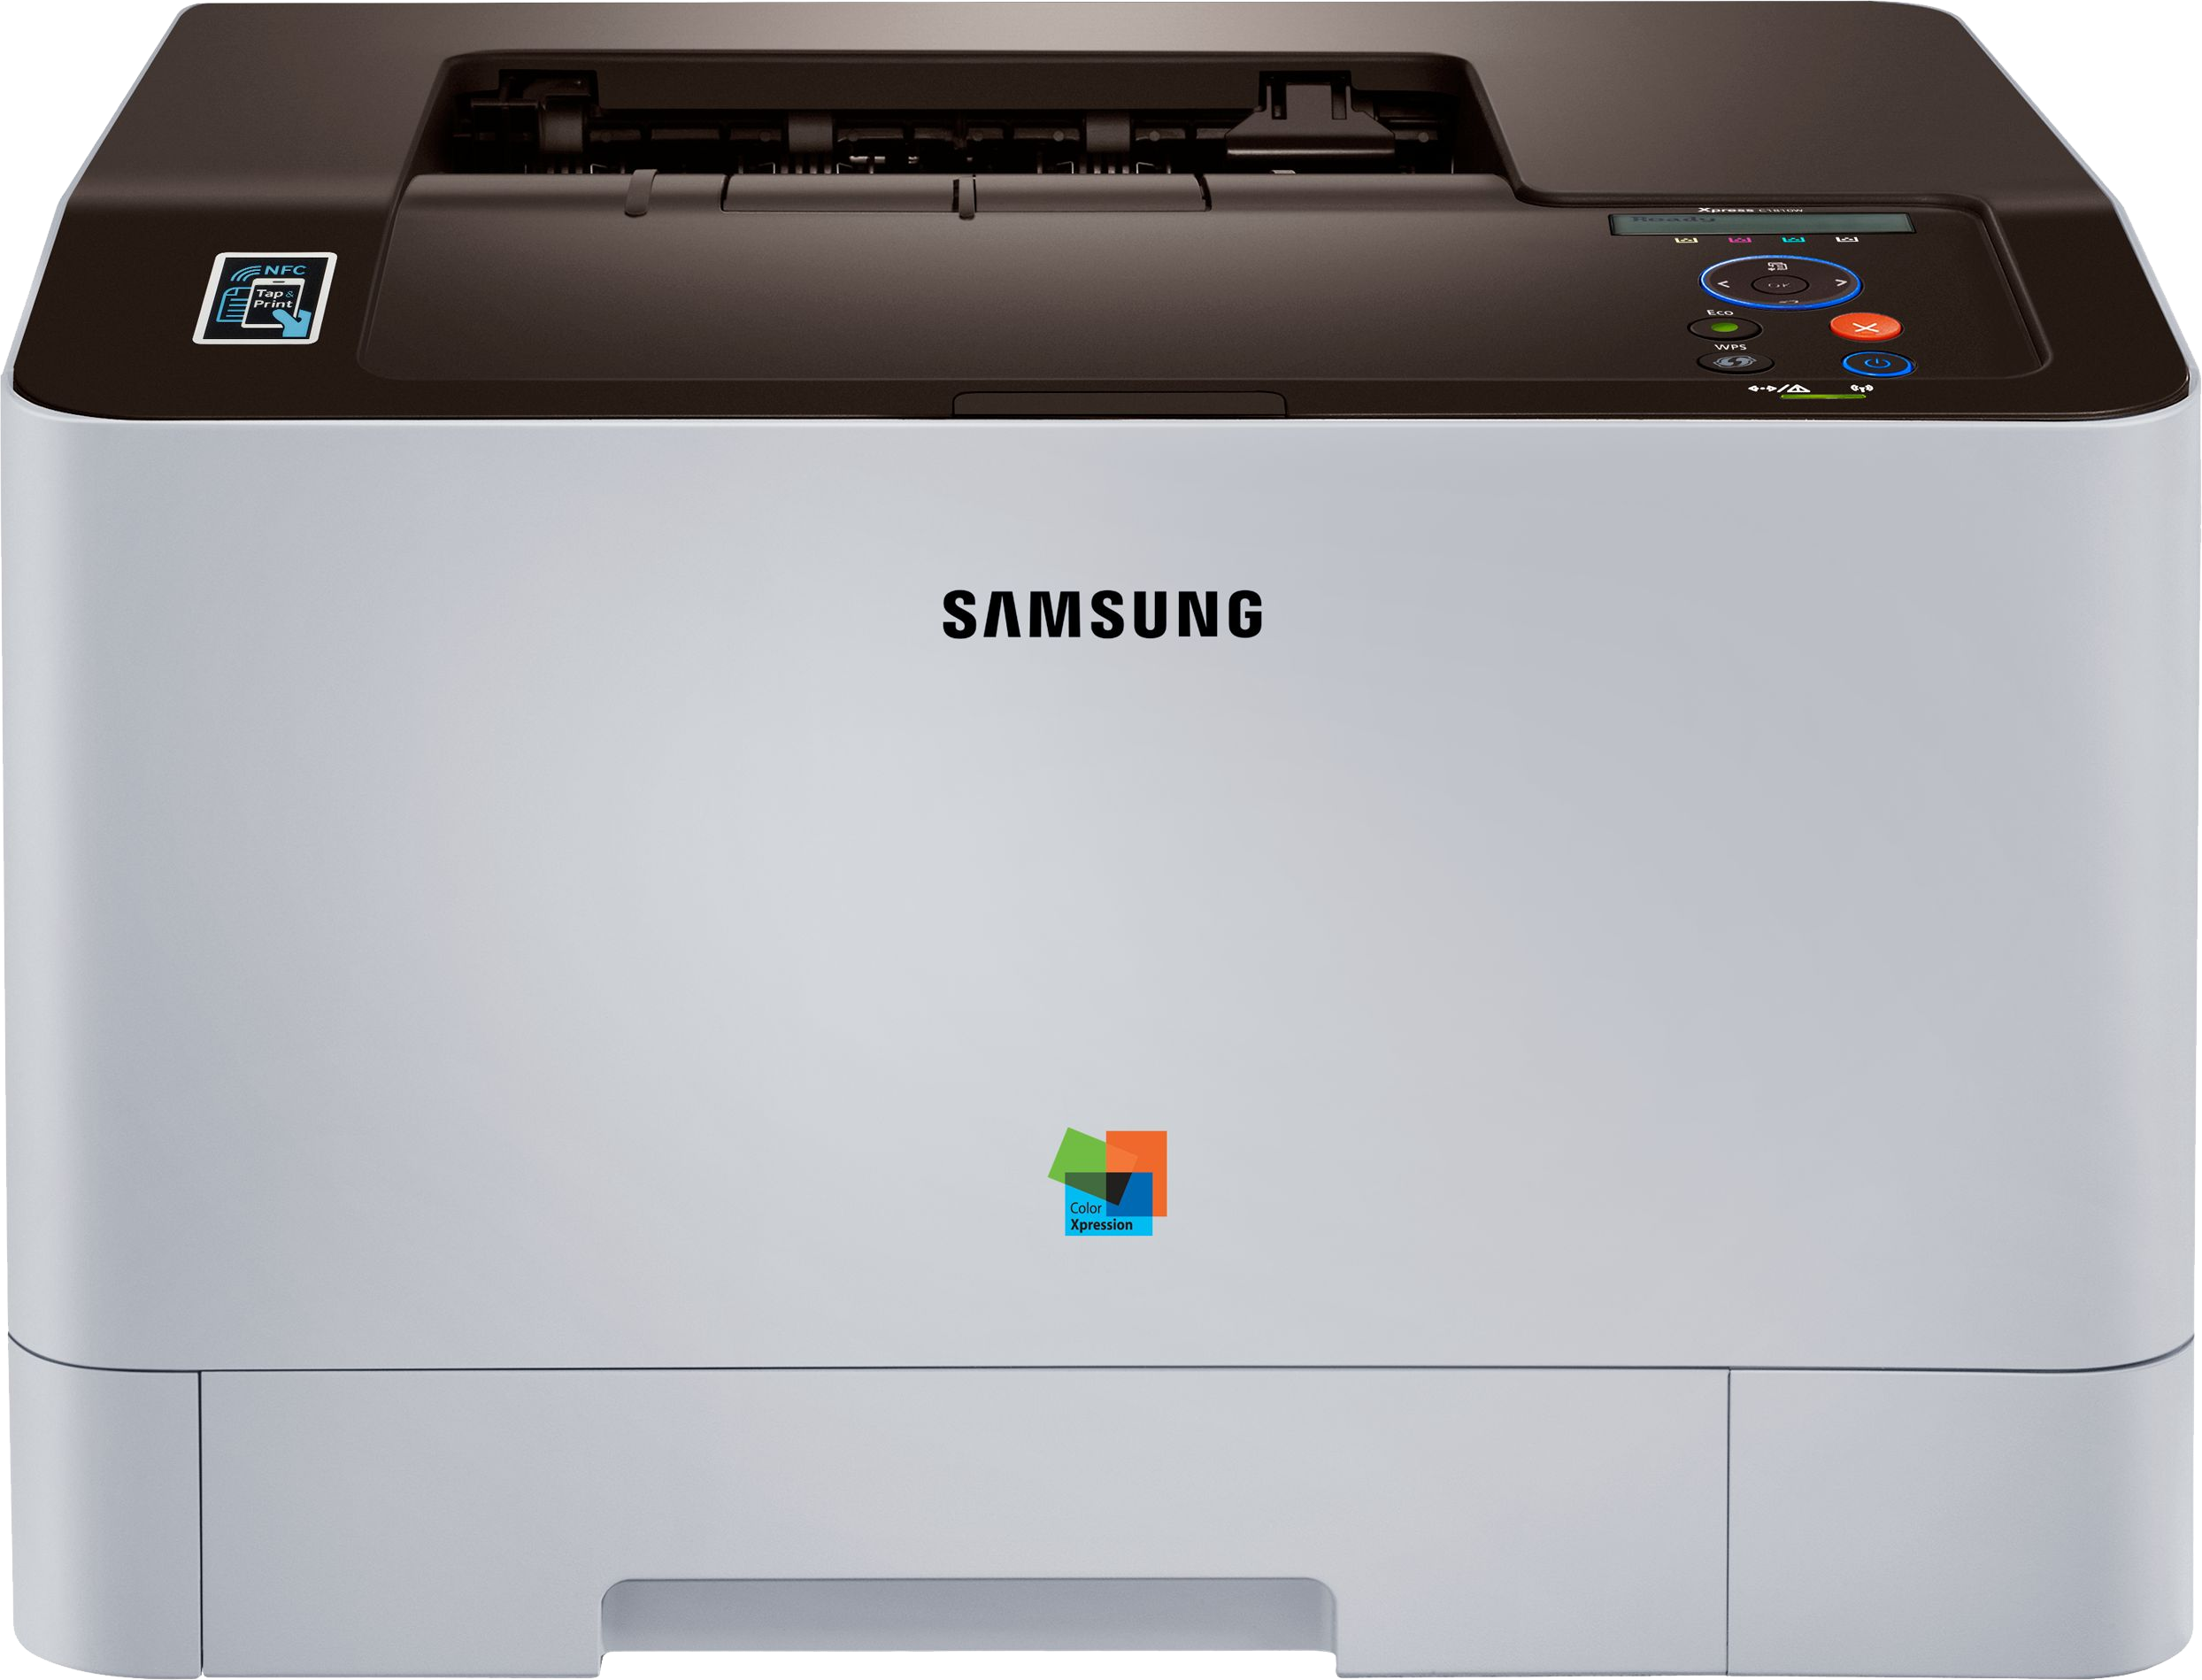 Ремонт принтера самсунг цена. Принтер Samsung CLP-415nw. Samsung SL c1810w. Принтер Samsung Xpress c1810w. Принтер Samsung 315.